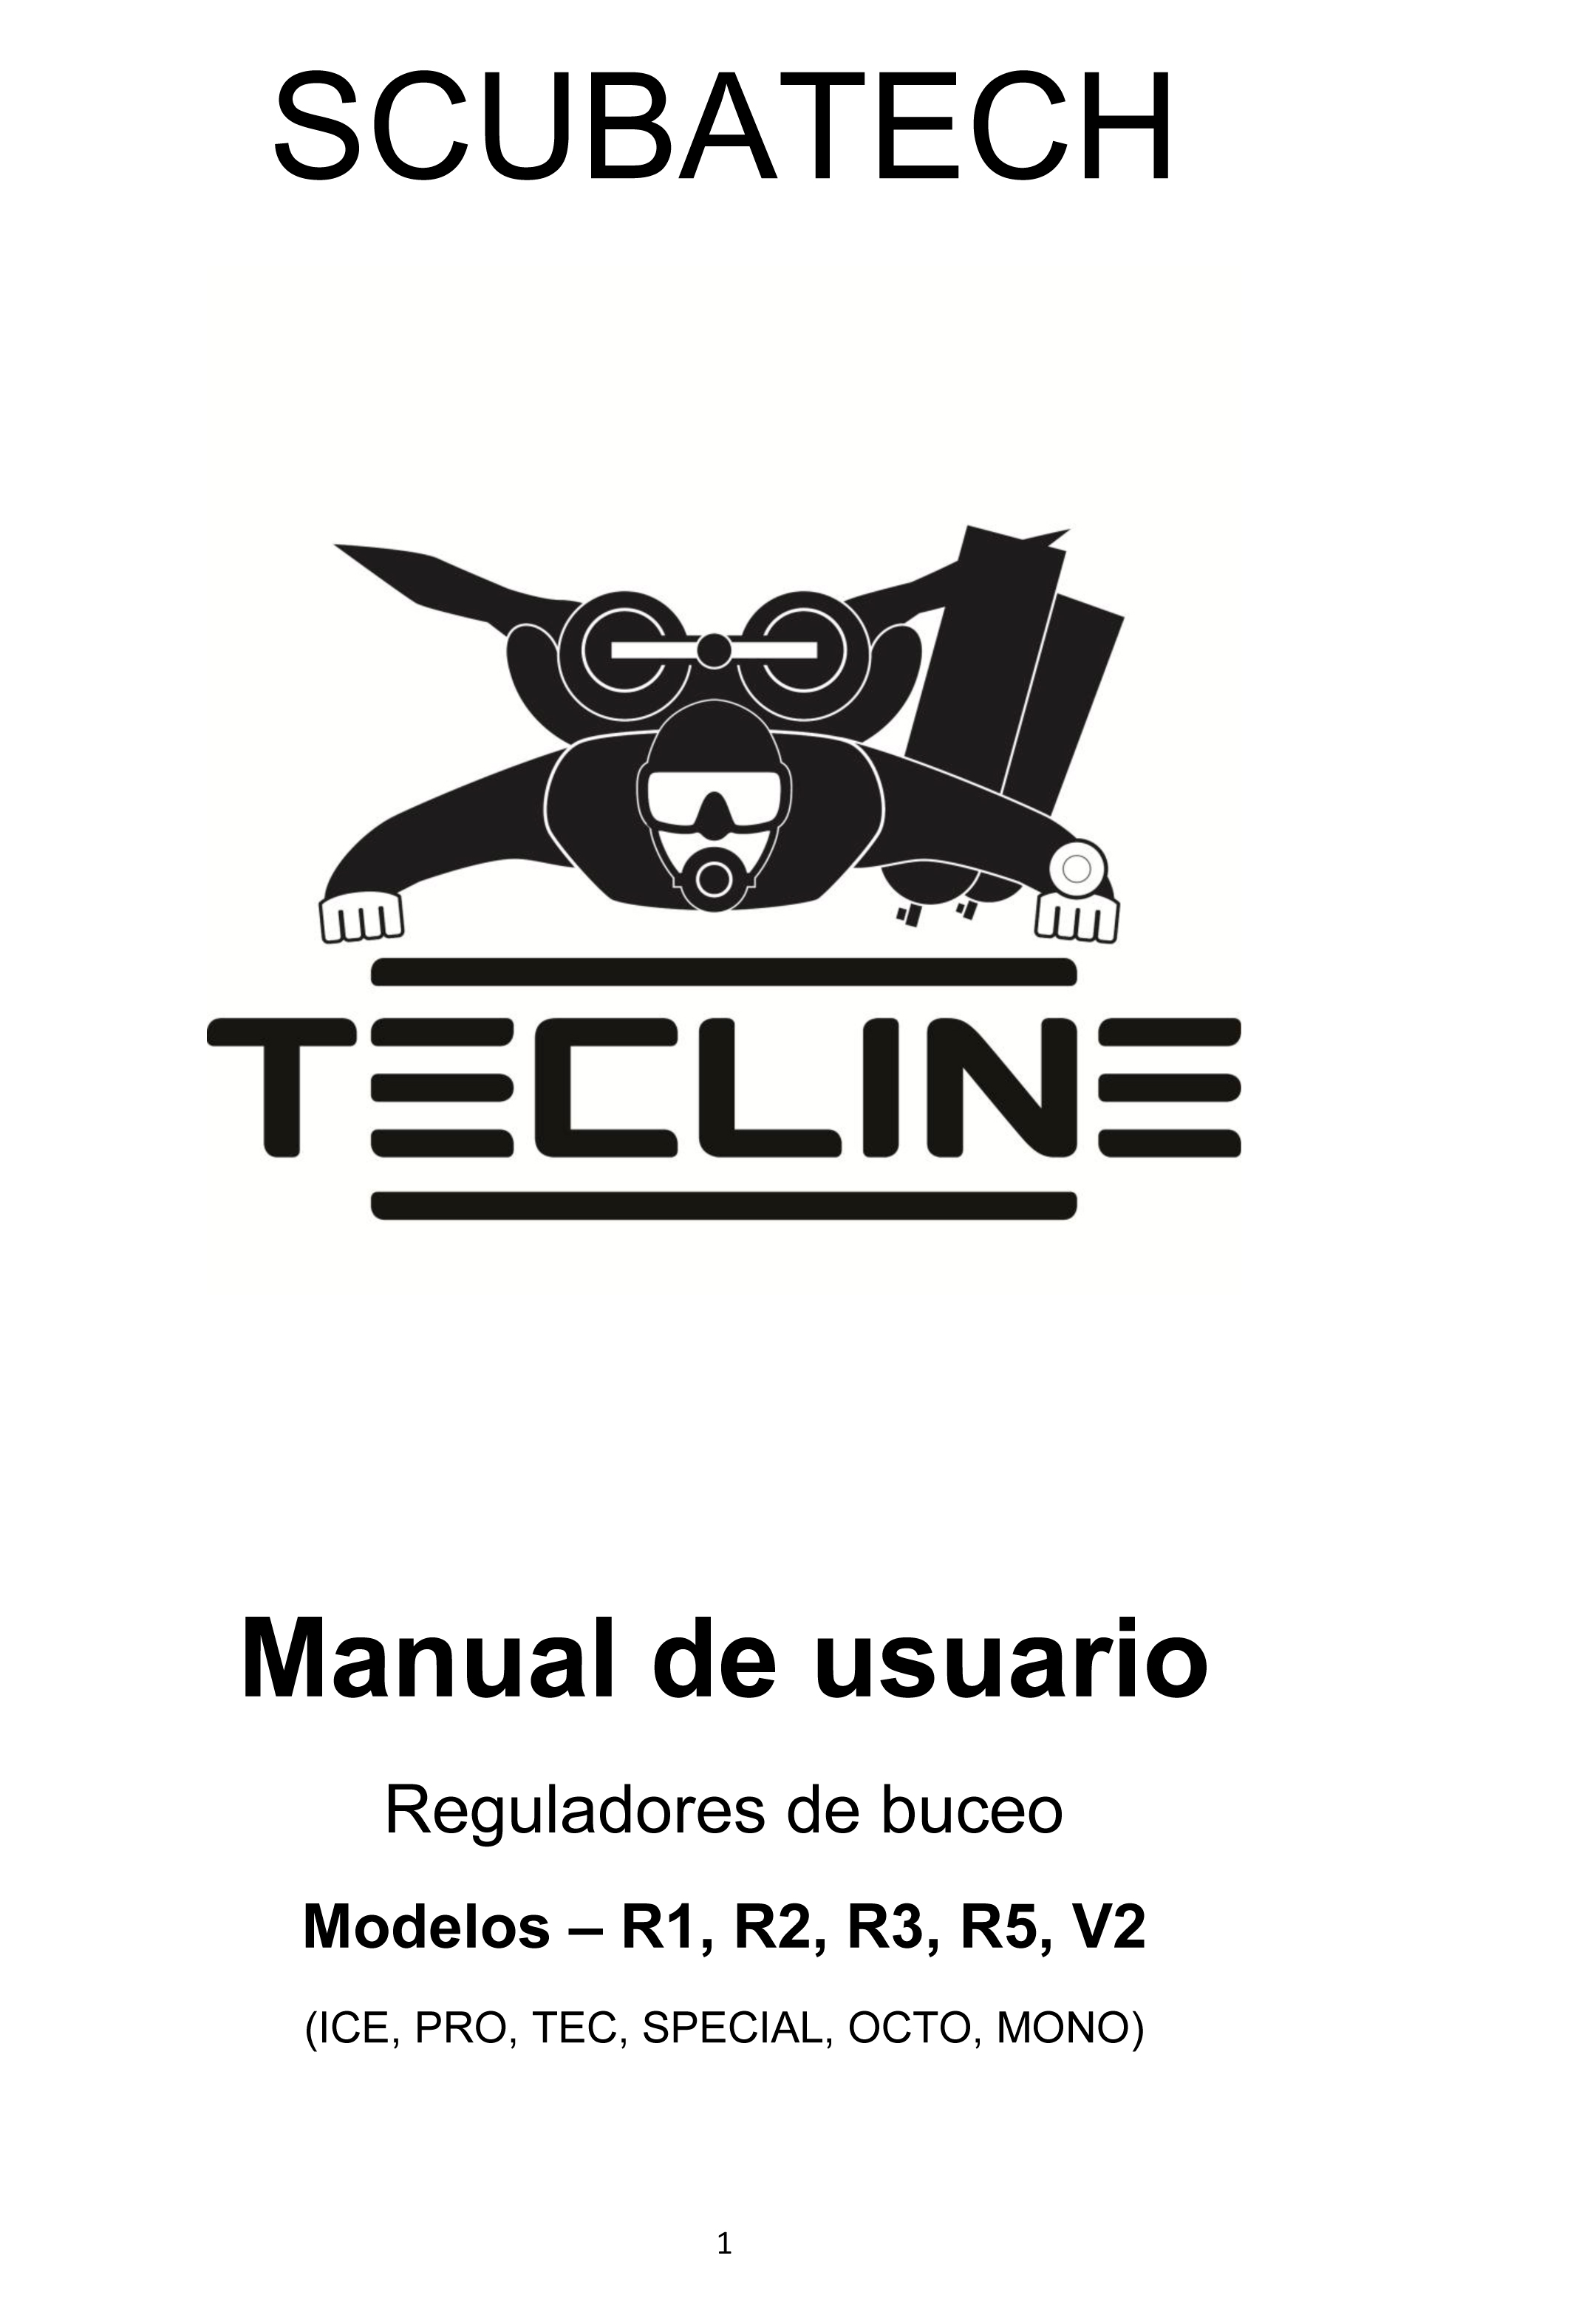 SCUBATECH-Manual-de-Usuario-Reguladores-1